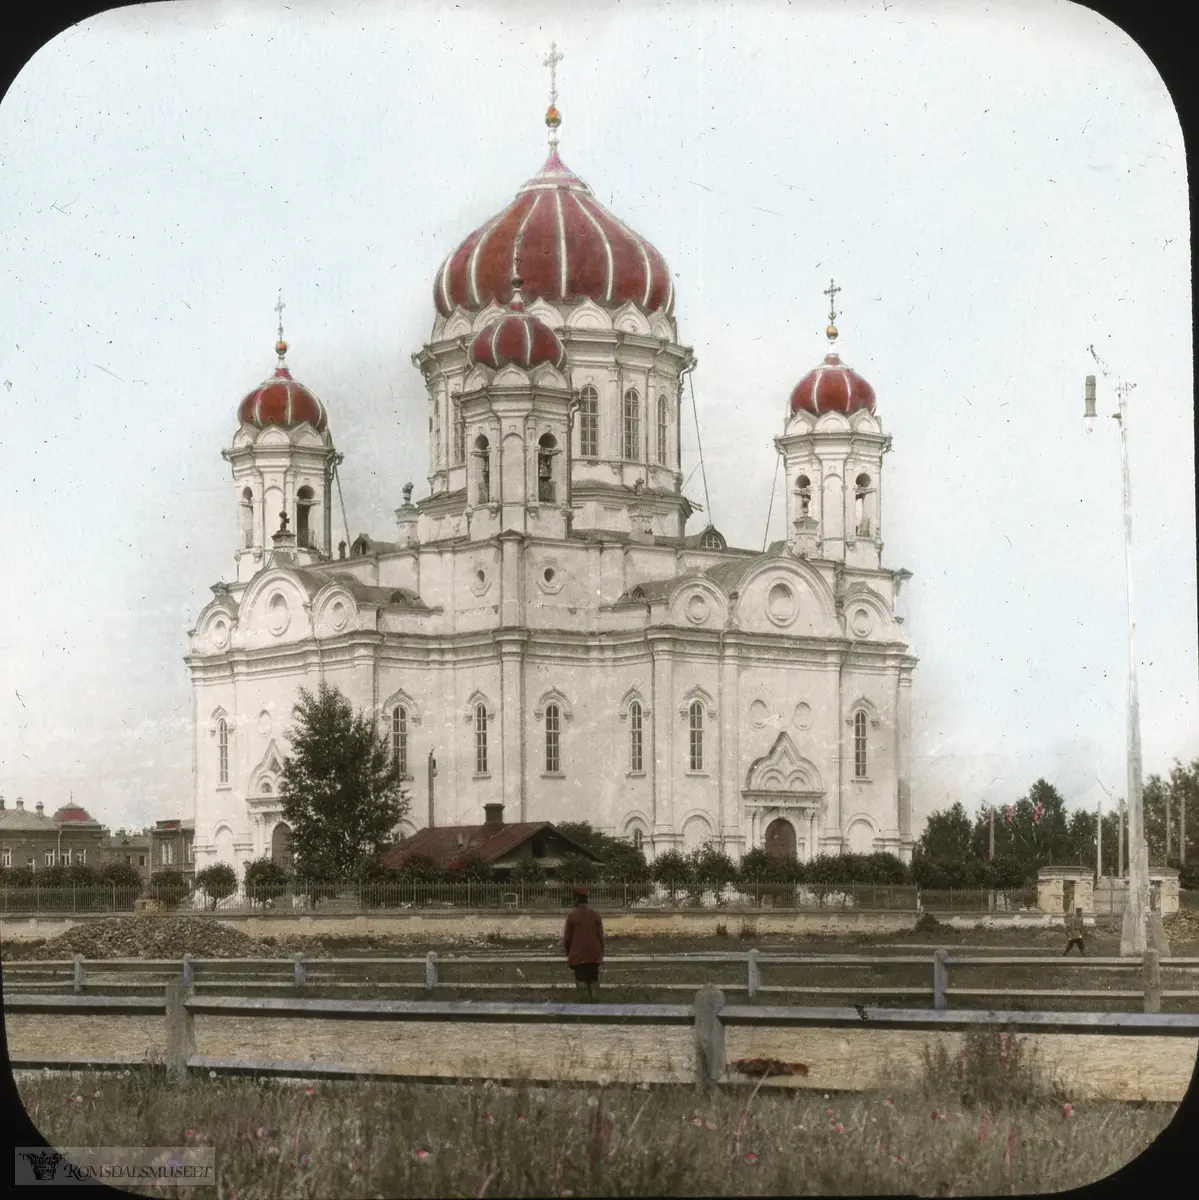 Fra Jonas Lied samlingen., "Church at Tomsk" "Trinity Cathedral" i Tomsk, Russland. Katedralen var den viktigste ortodokse kirken i Tomsk bispedømme i perioden 1900-1930. Den lå på Novosobornaya-plassen i Tomsk. Bygningen ble påbegynt i 1844, men takkuppelen kollapset i 1850 og drepte fire mennesker. Arbeidet ble gjenopptatt i 1858, men ble snart suspendert på grunn av kostnadsoverskridelser og et kjølig klima "for den hellige sak". Det var først i 1885-1889 at kirken ble fullført av byarkitekt V.V. Khabarov. Utsmykningen av katedralen fortsatte til sommeren 1900. I 1930 ble katedralen stengt og i 1934 ble den revet og det istedet anlagt et torg på plassen der kirken stod.